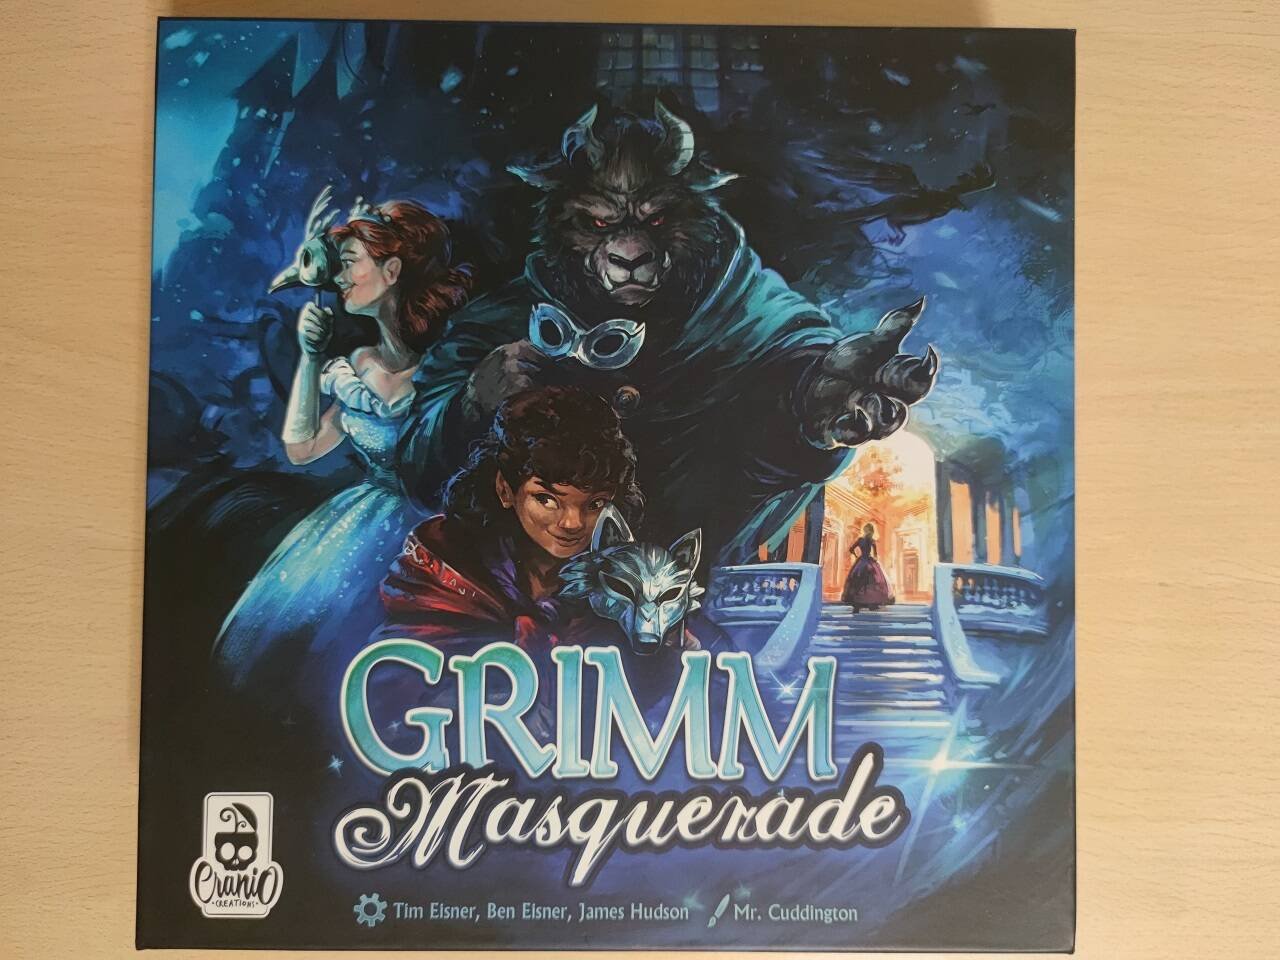 Immagine di Grimm Masquerade, la recensione: un'indagine mascherata da fiaba